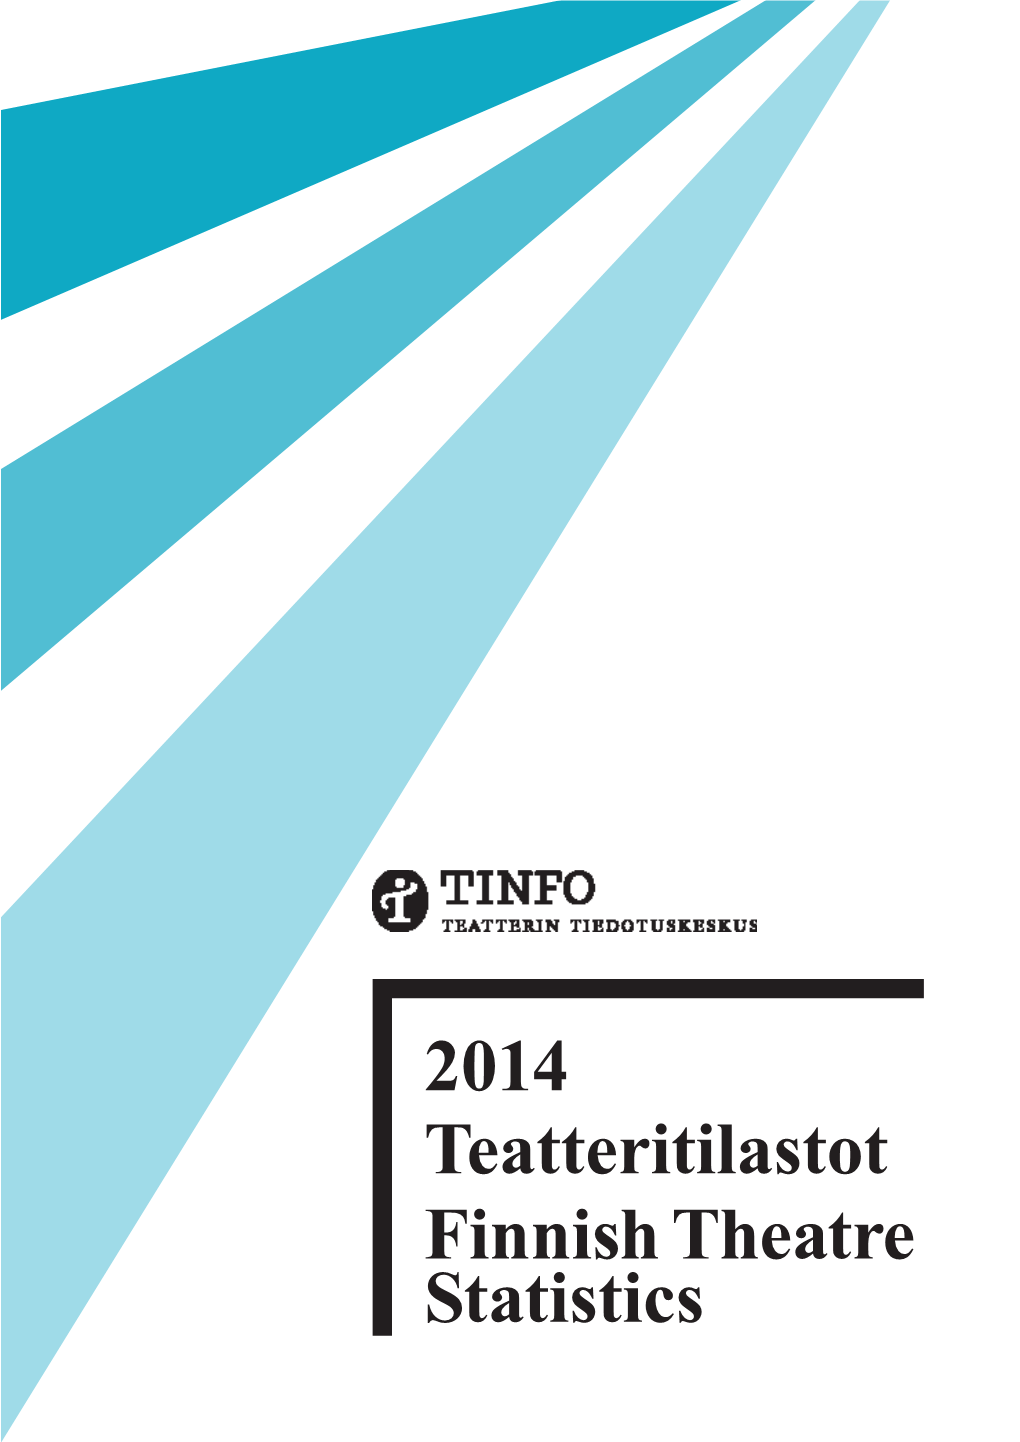 2014 Teatteritilastot Finnish Theatre Statistics TEATTERITILASTOT FINNISH THEATRE STATISTICS